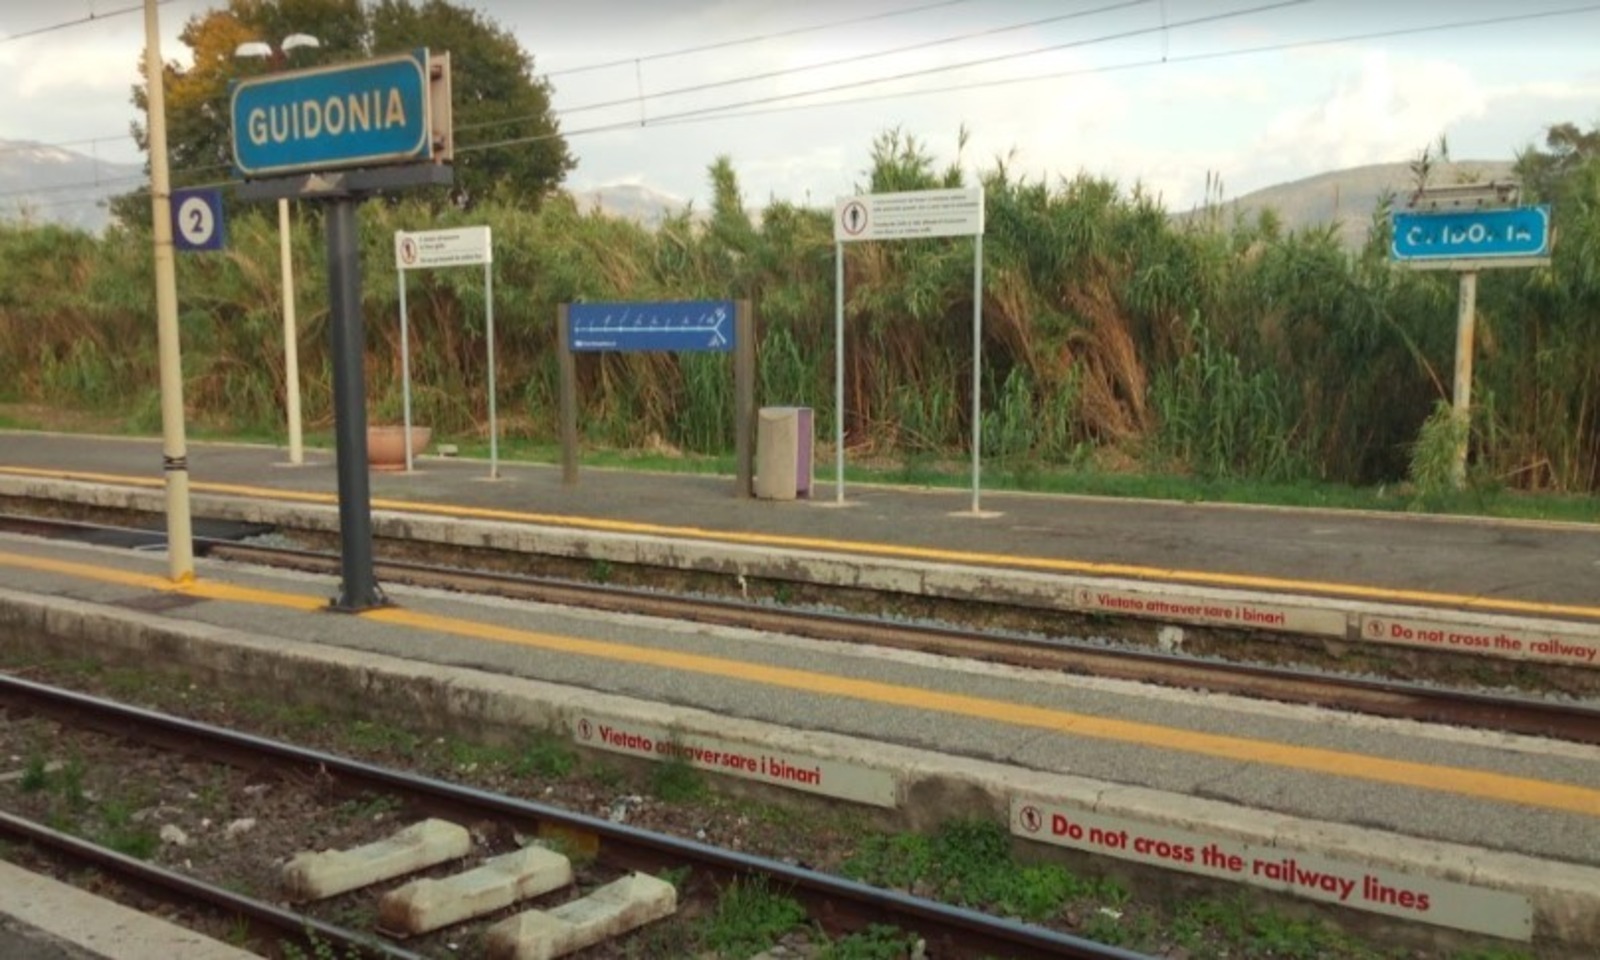 Treni fermi tra Roma e Guidonia per lavori